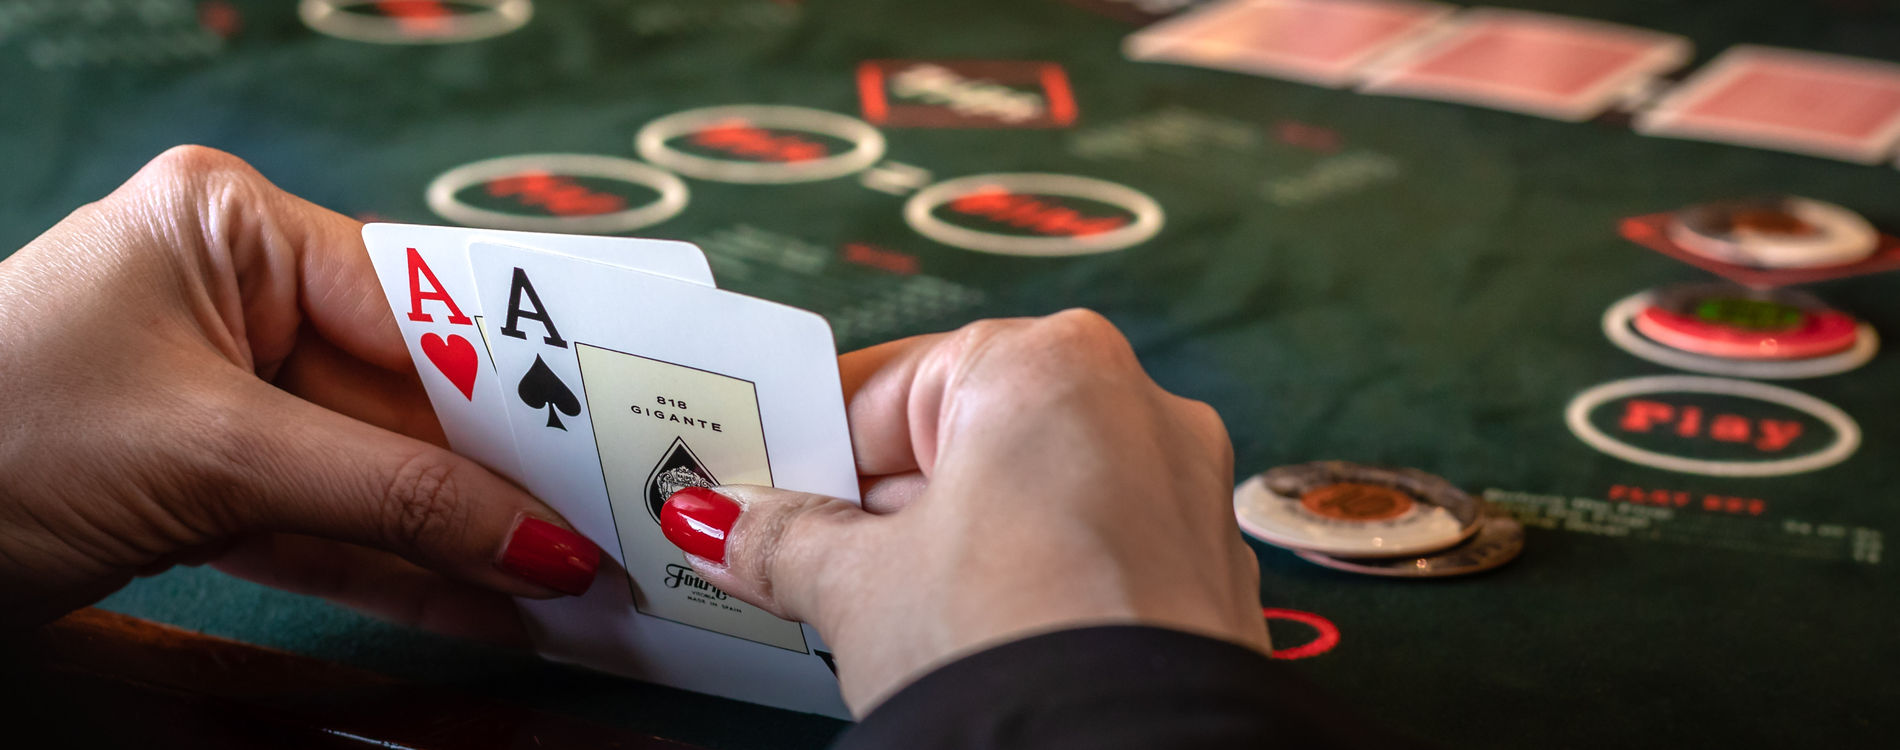 Cara Akurat IDN poker agar Bisa Balik Modal dalam Proses Main Cepat